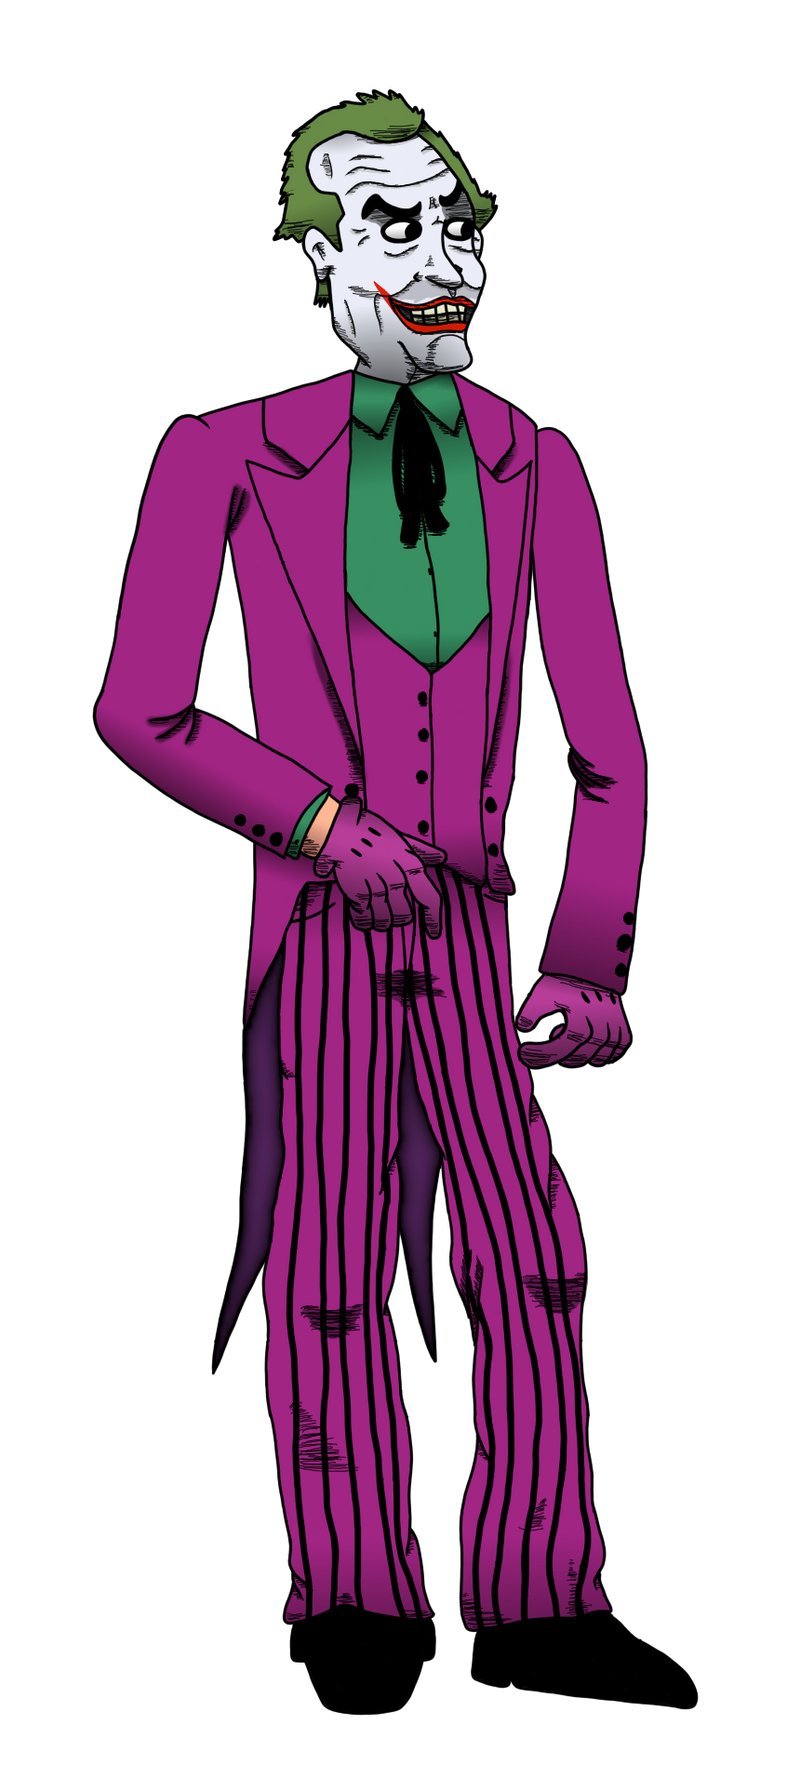 Jack Nicholson Joker (Cesar Romero) by clinteast on DeviantArt